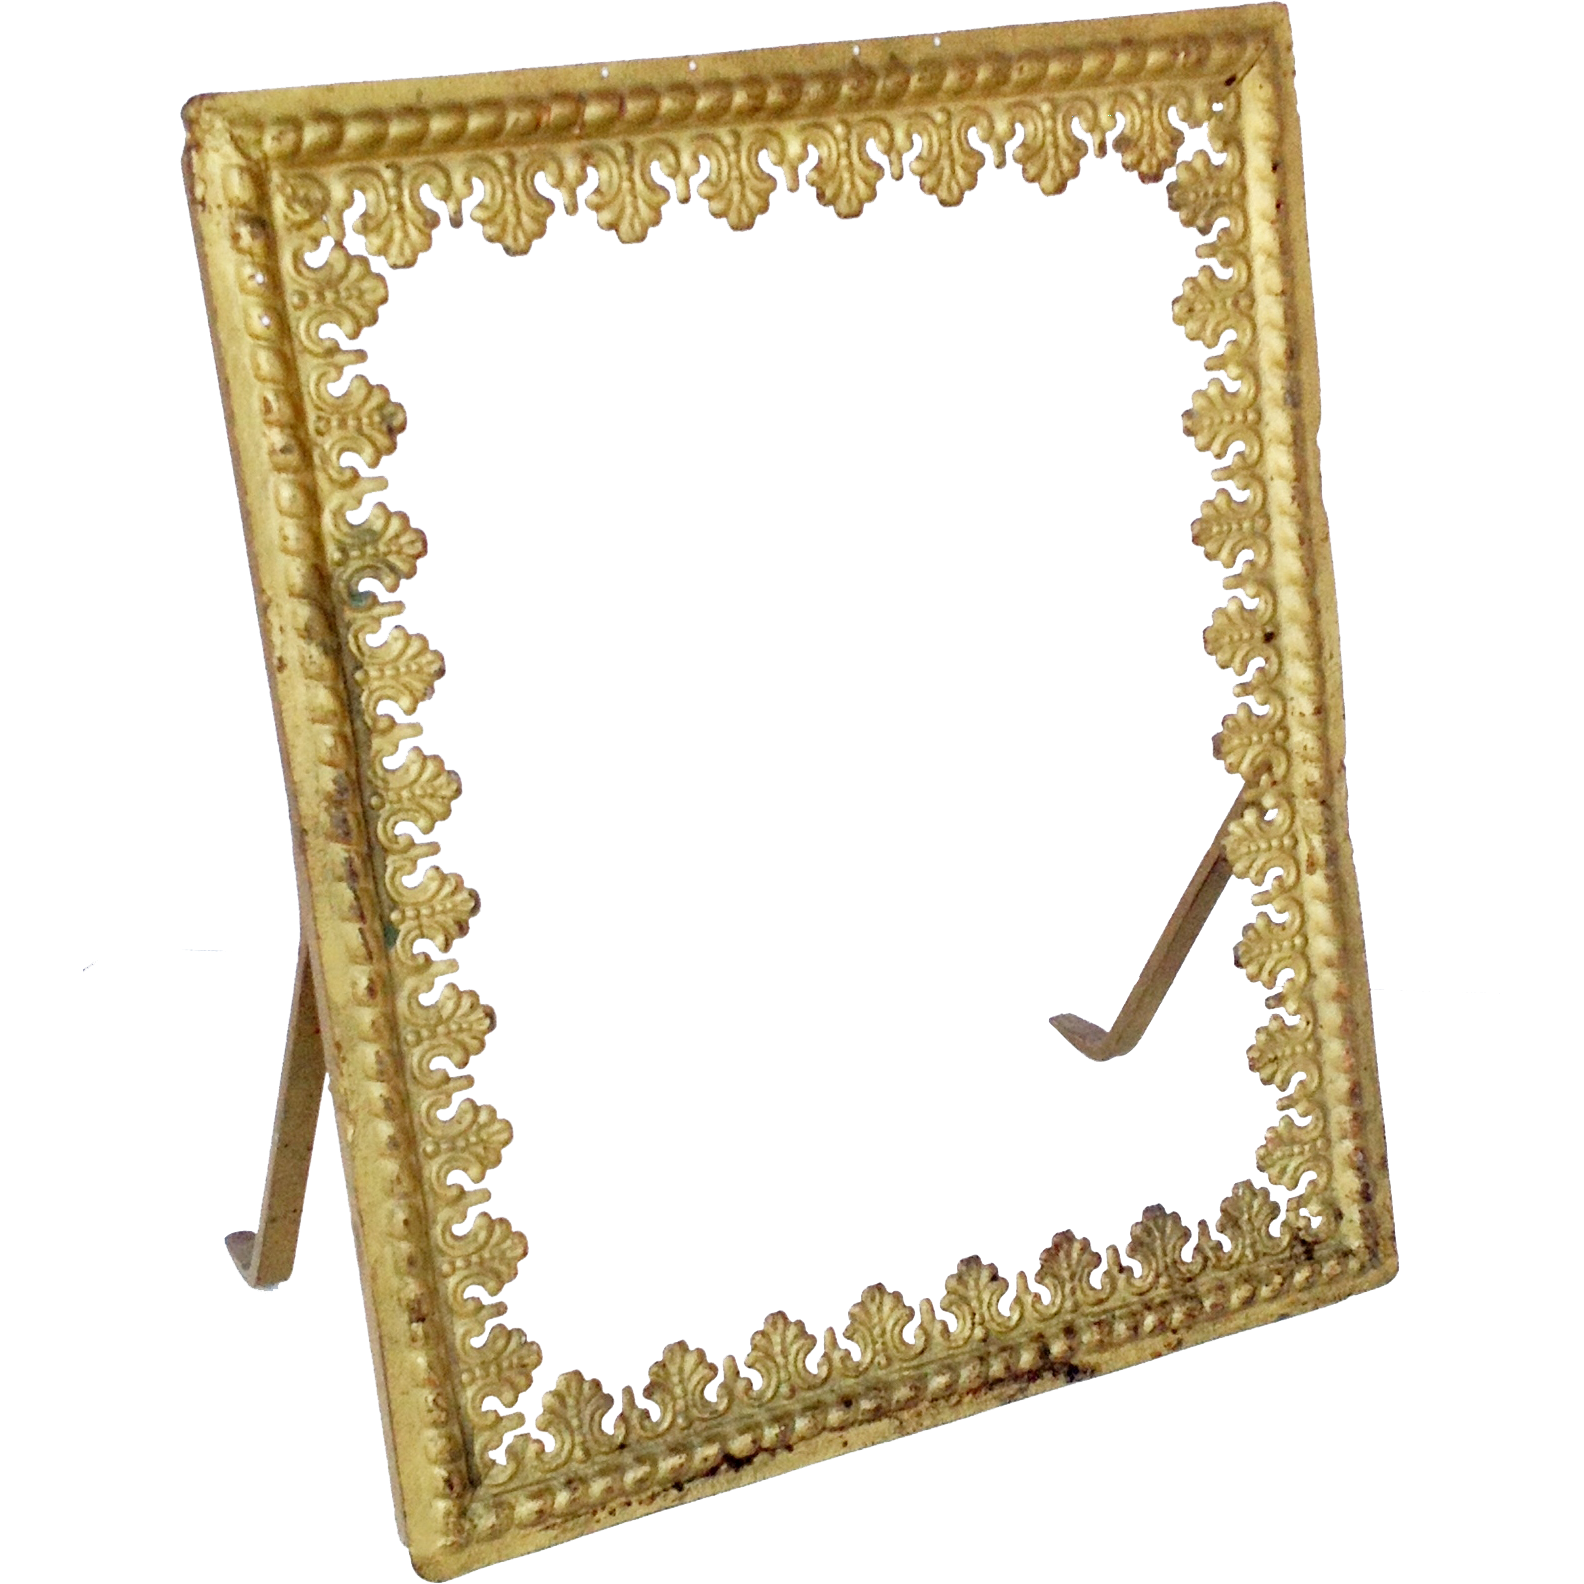 Golden Mirror Frame PNG Image Background